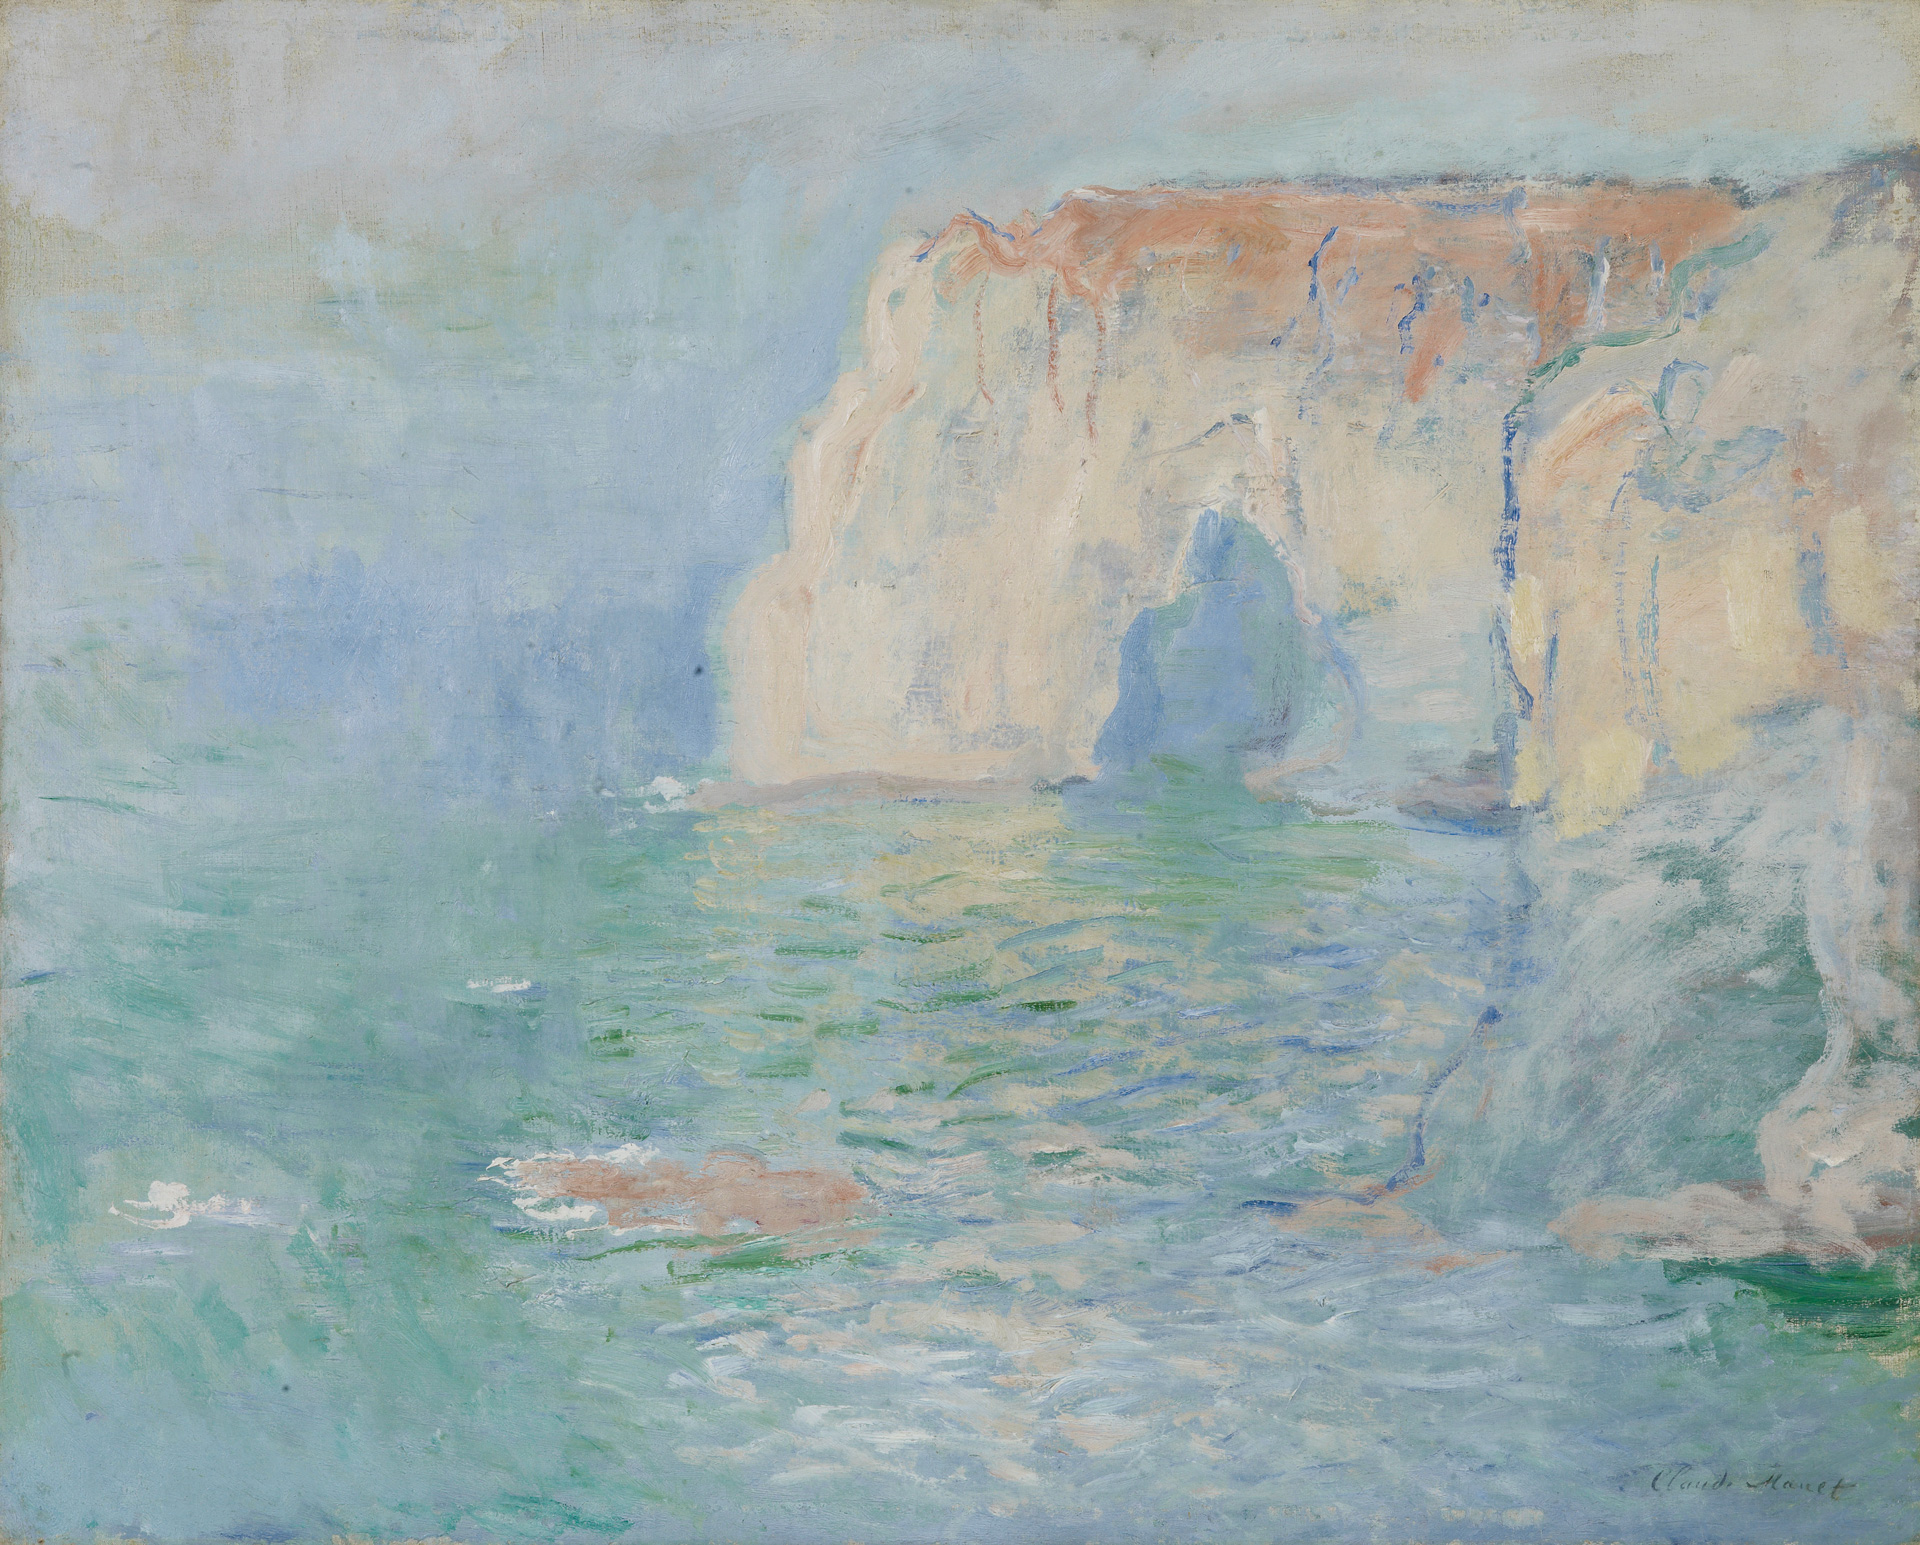 Claude Monet, "Étretat, la Manneporte, reflets sur l’eau", vers 1885, Musée des Beaux-Arts, Caen